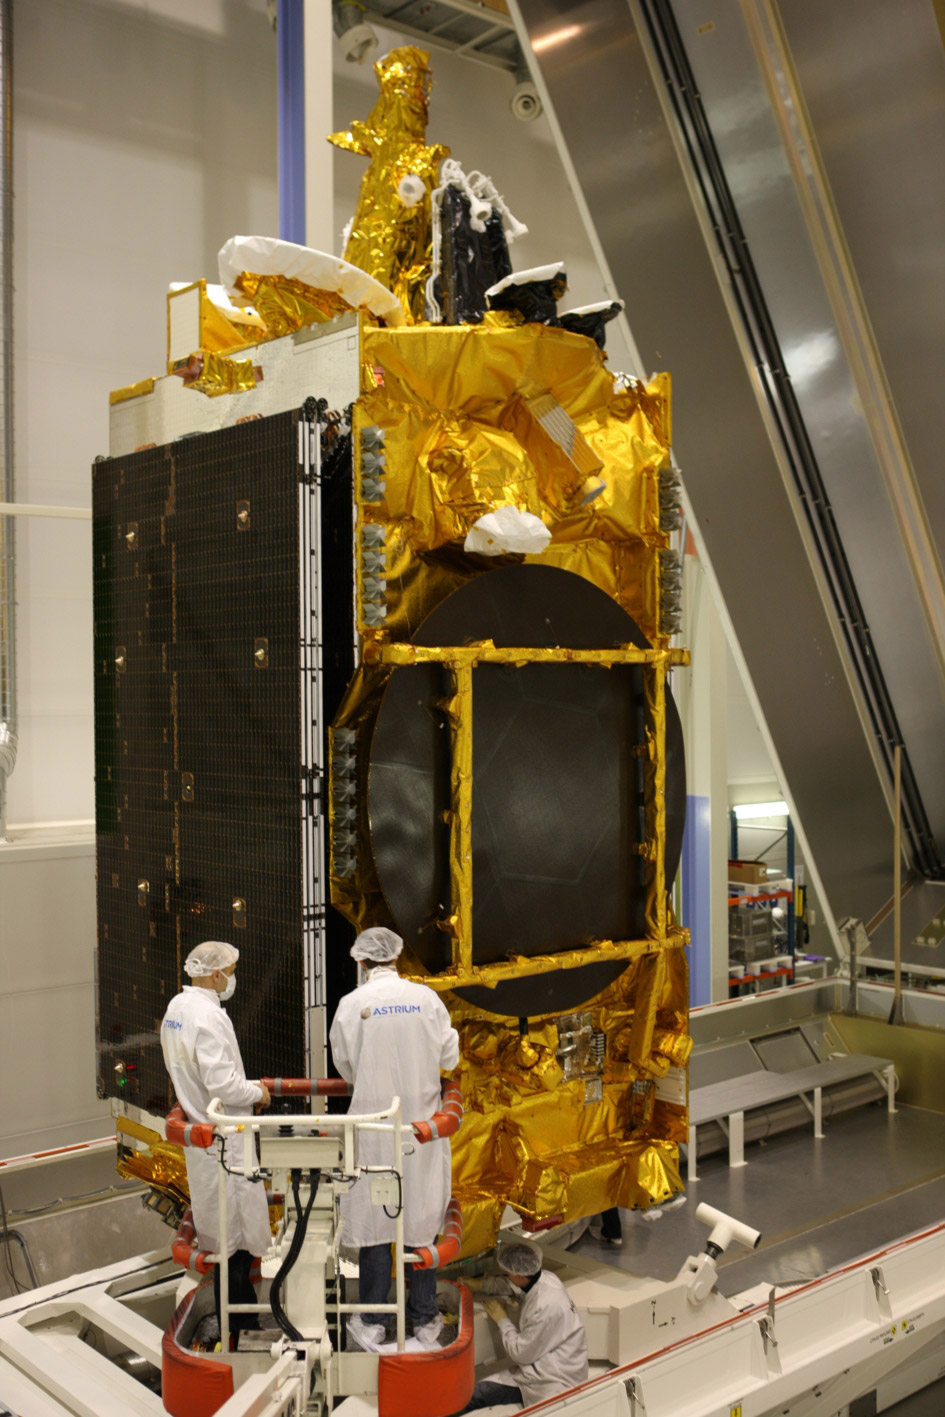 Le satellite Yahsat Y1A sera le premier satellite des Émirats arabes unis lancé par Arianespace. On le voit ici mis en container dans l'usine toulousaine d'Astrium, avant son départ vers Kourou (fevrier 2011). © Astrium/D. Marques